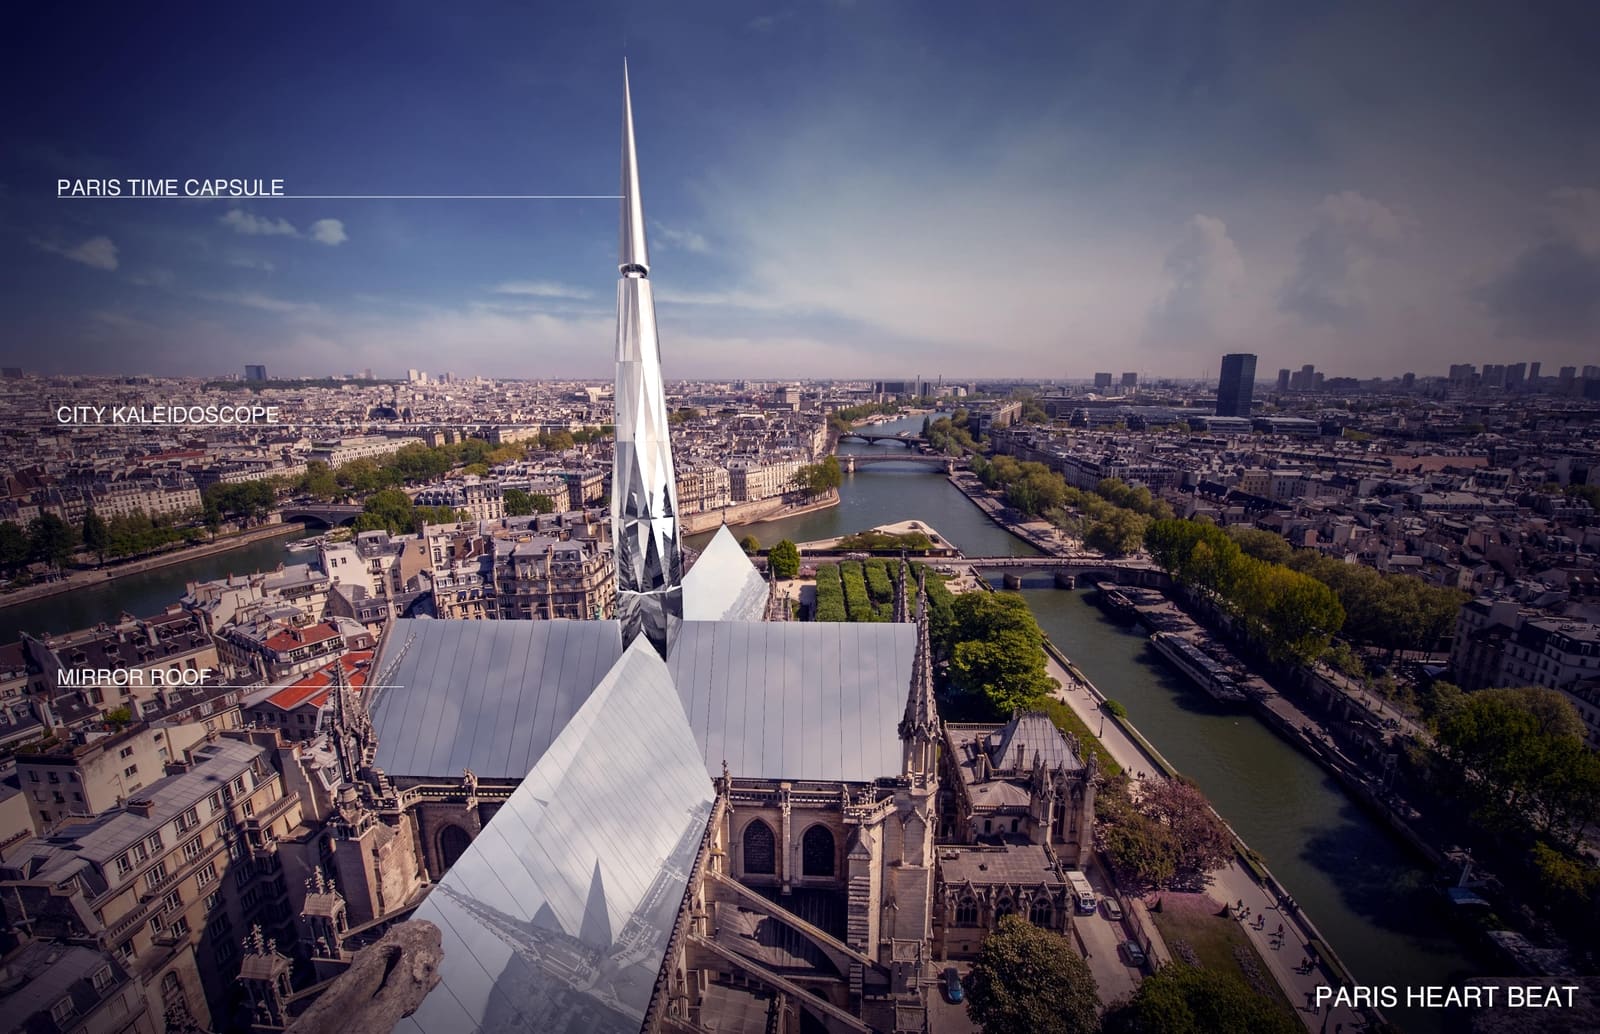 The other day evolution Aviation Deux architectes chinois remportent le concours de design pour Notre-Dame